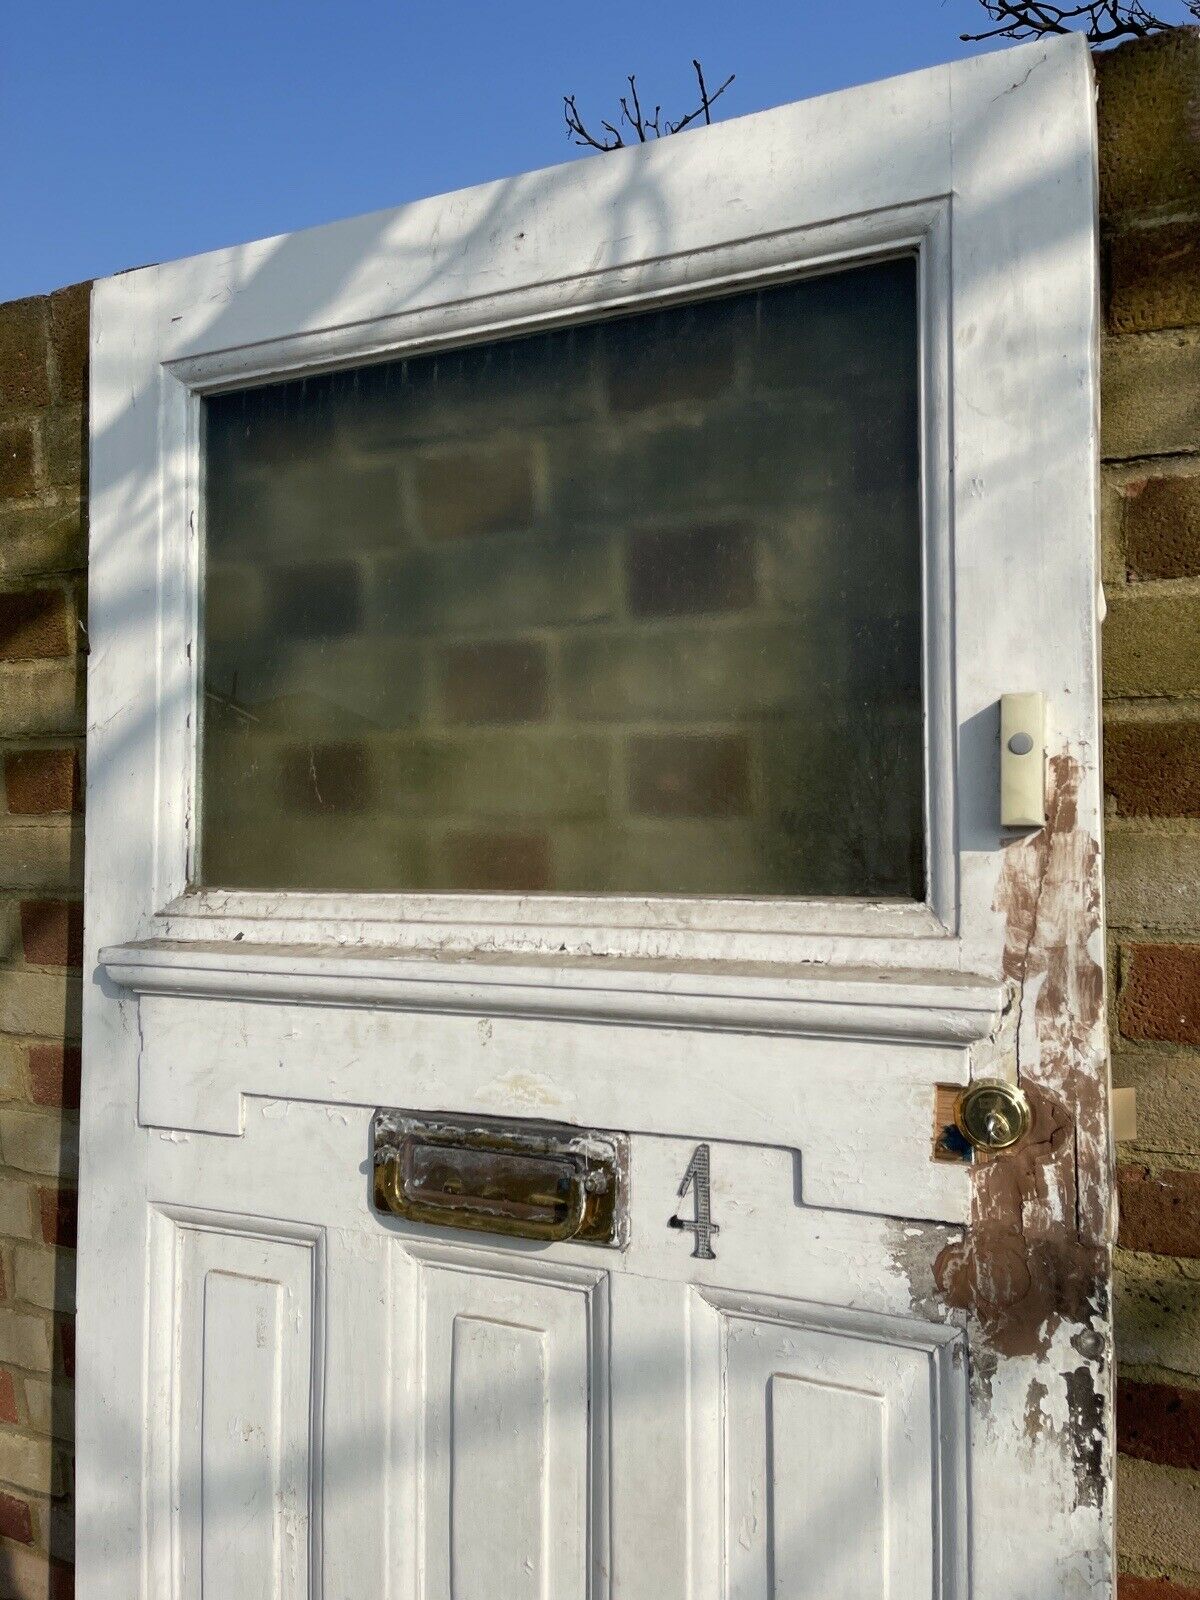 Reclaimed Old Edwardian Victorian Wooden Panel Front Door 2025mm x 805mm